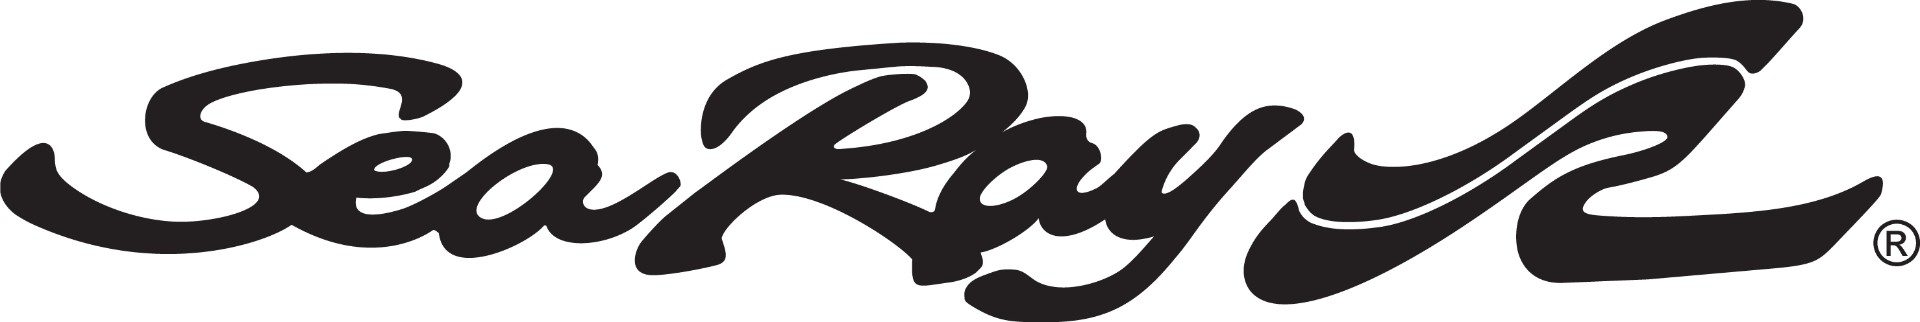 Sea Ray Boats logo